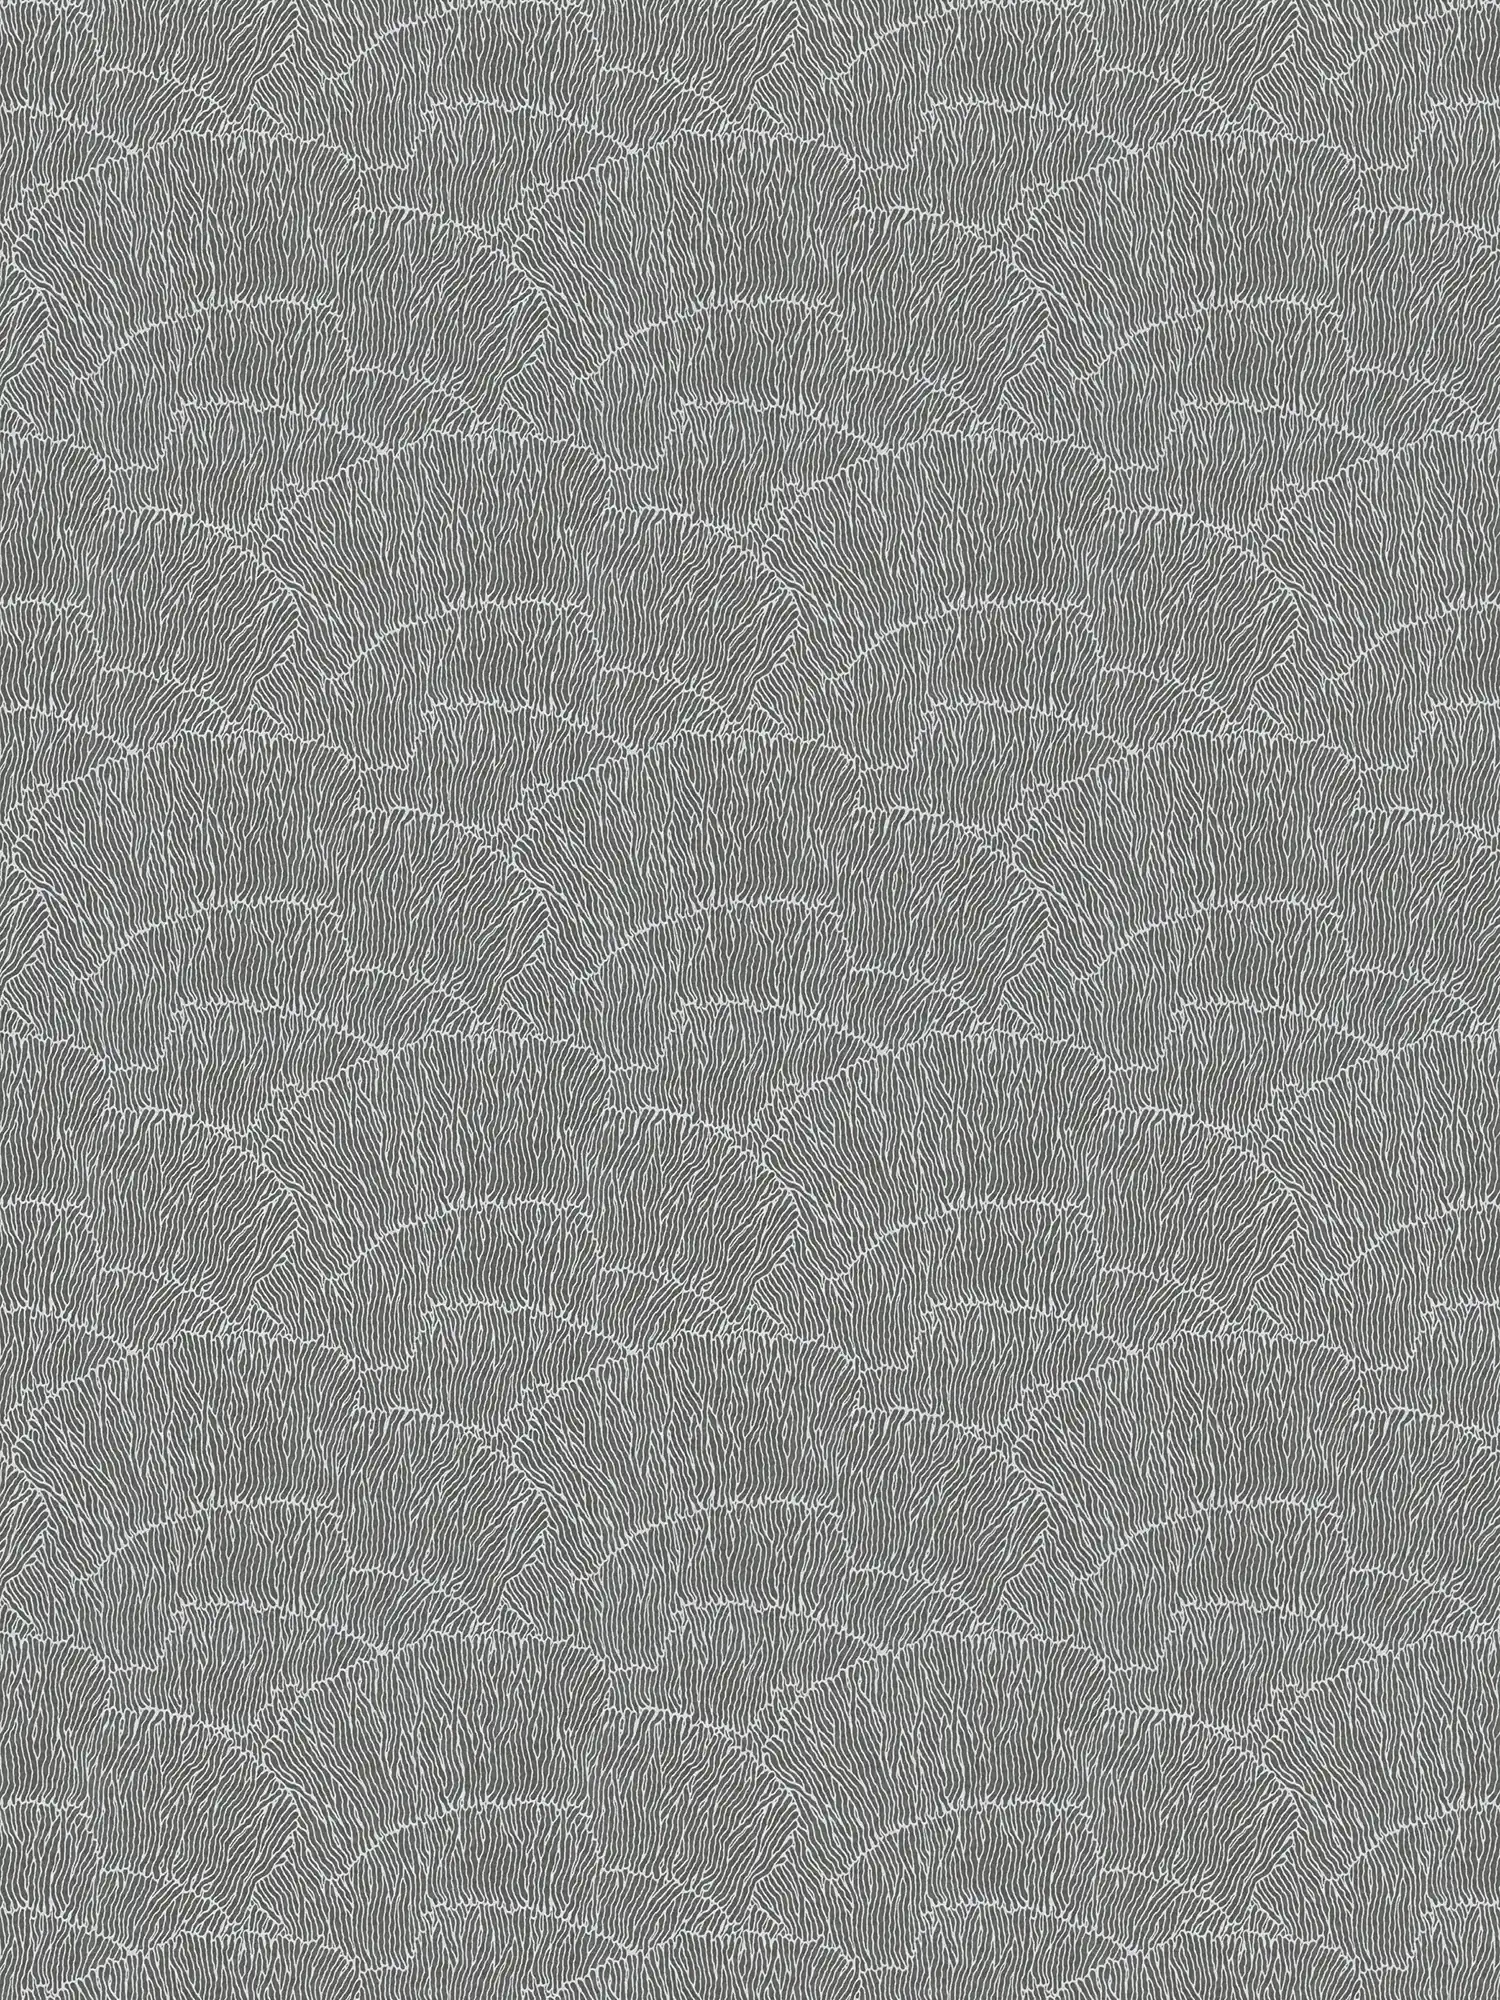 Abstract Onderlaag behang Met Lijnpatroon - Zilver, Zwart, Metaal
